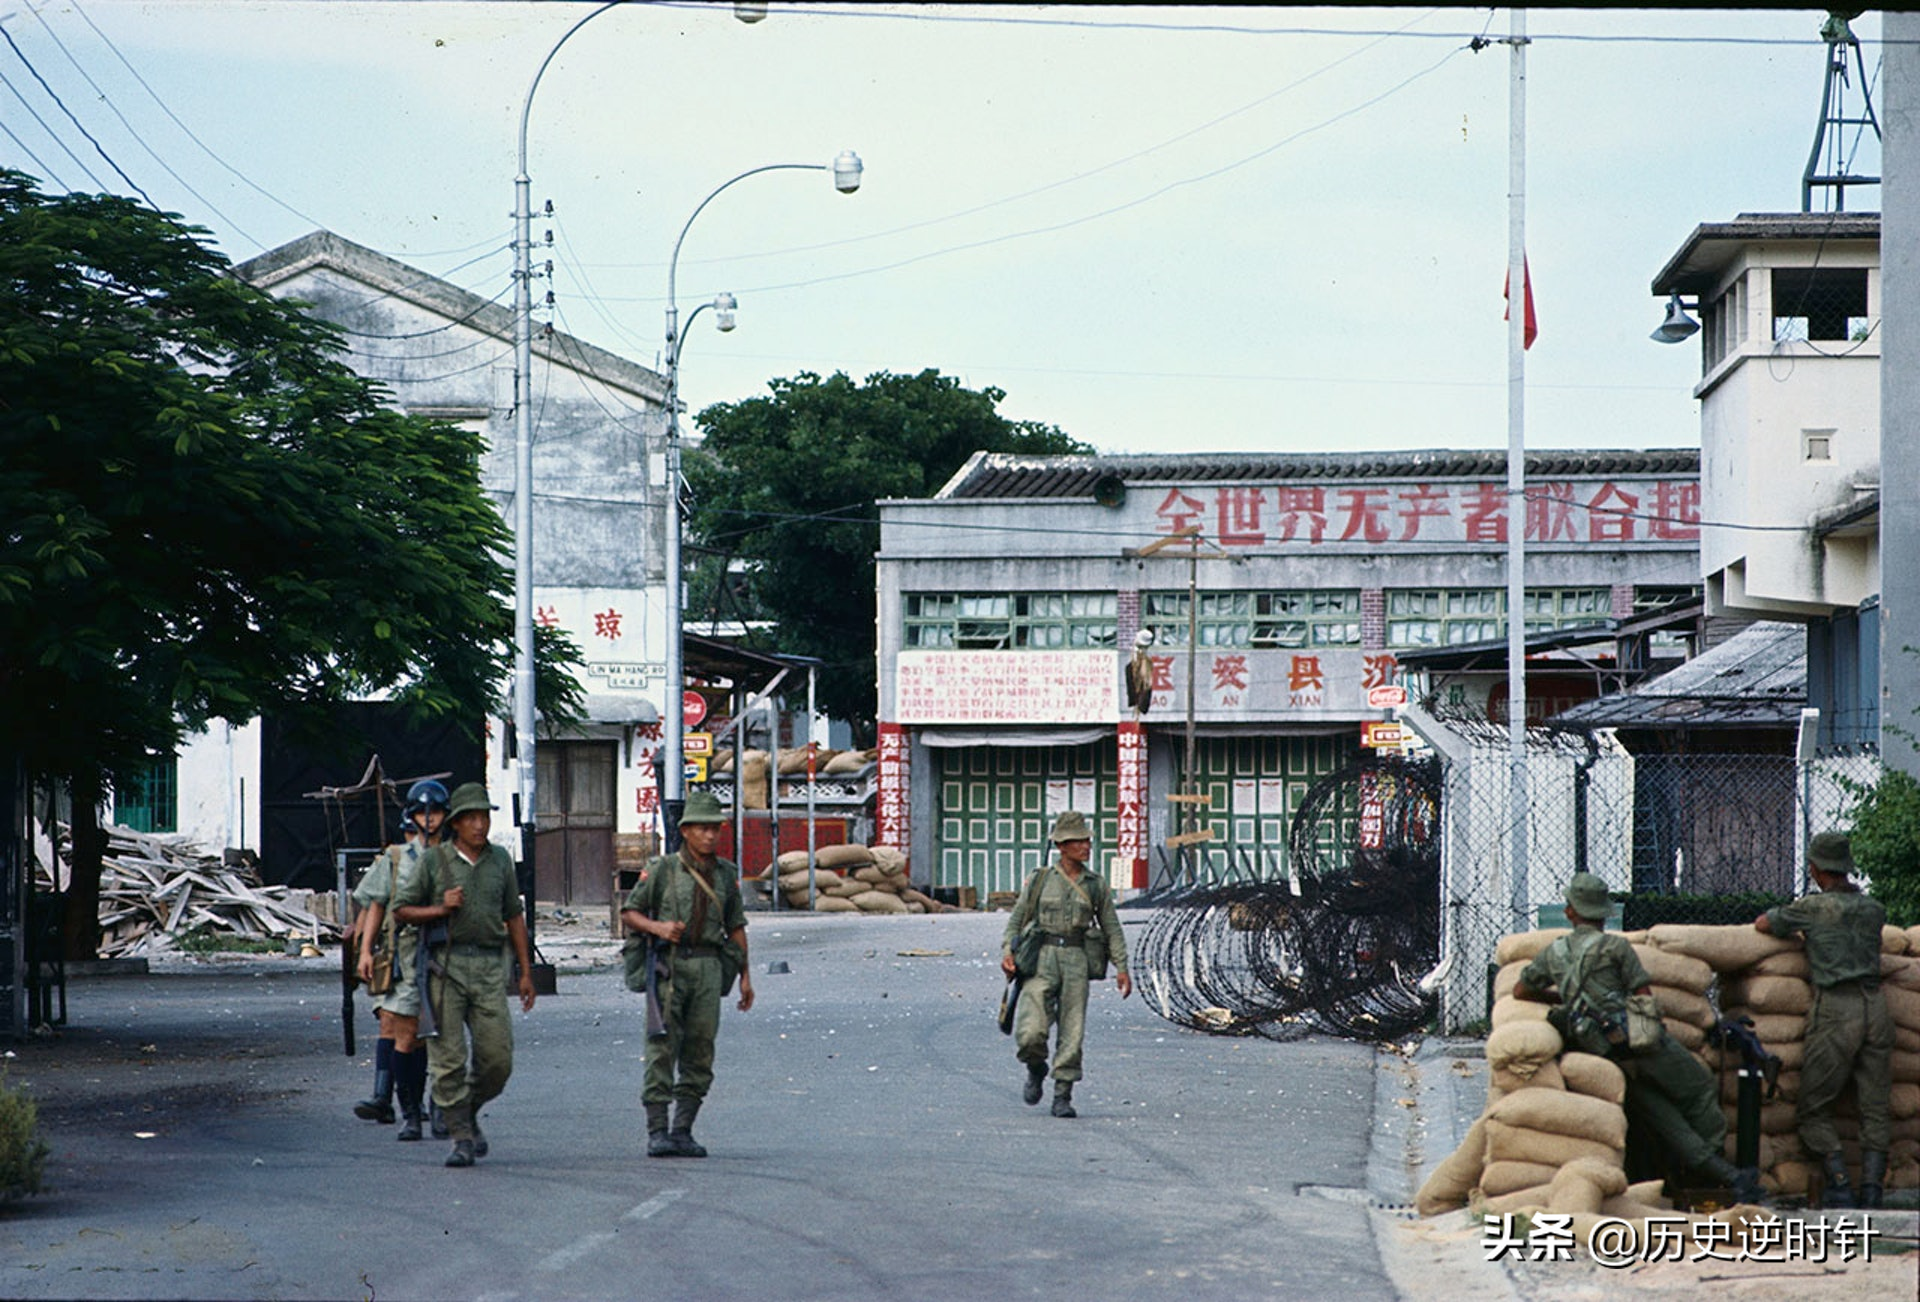 1967年，英國特種部隊被深圳搬運工繳槍34支，捉去1人